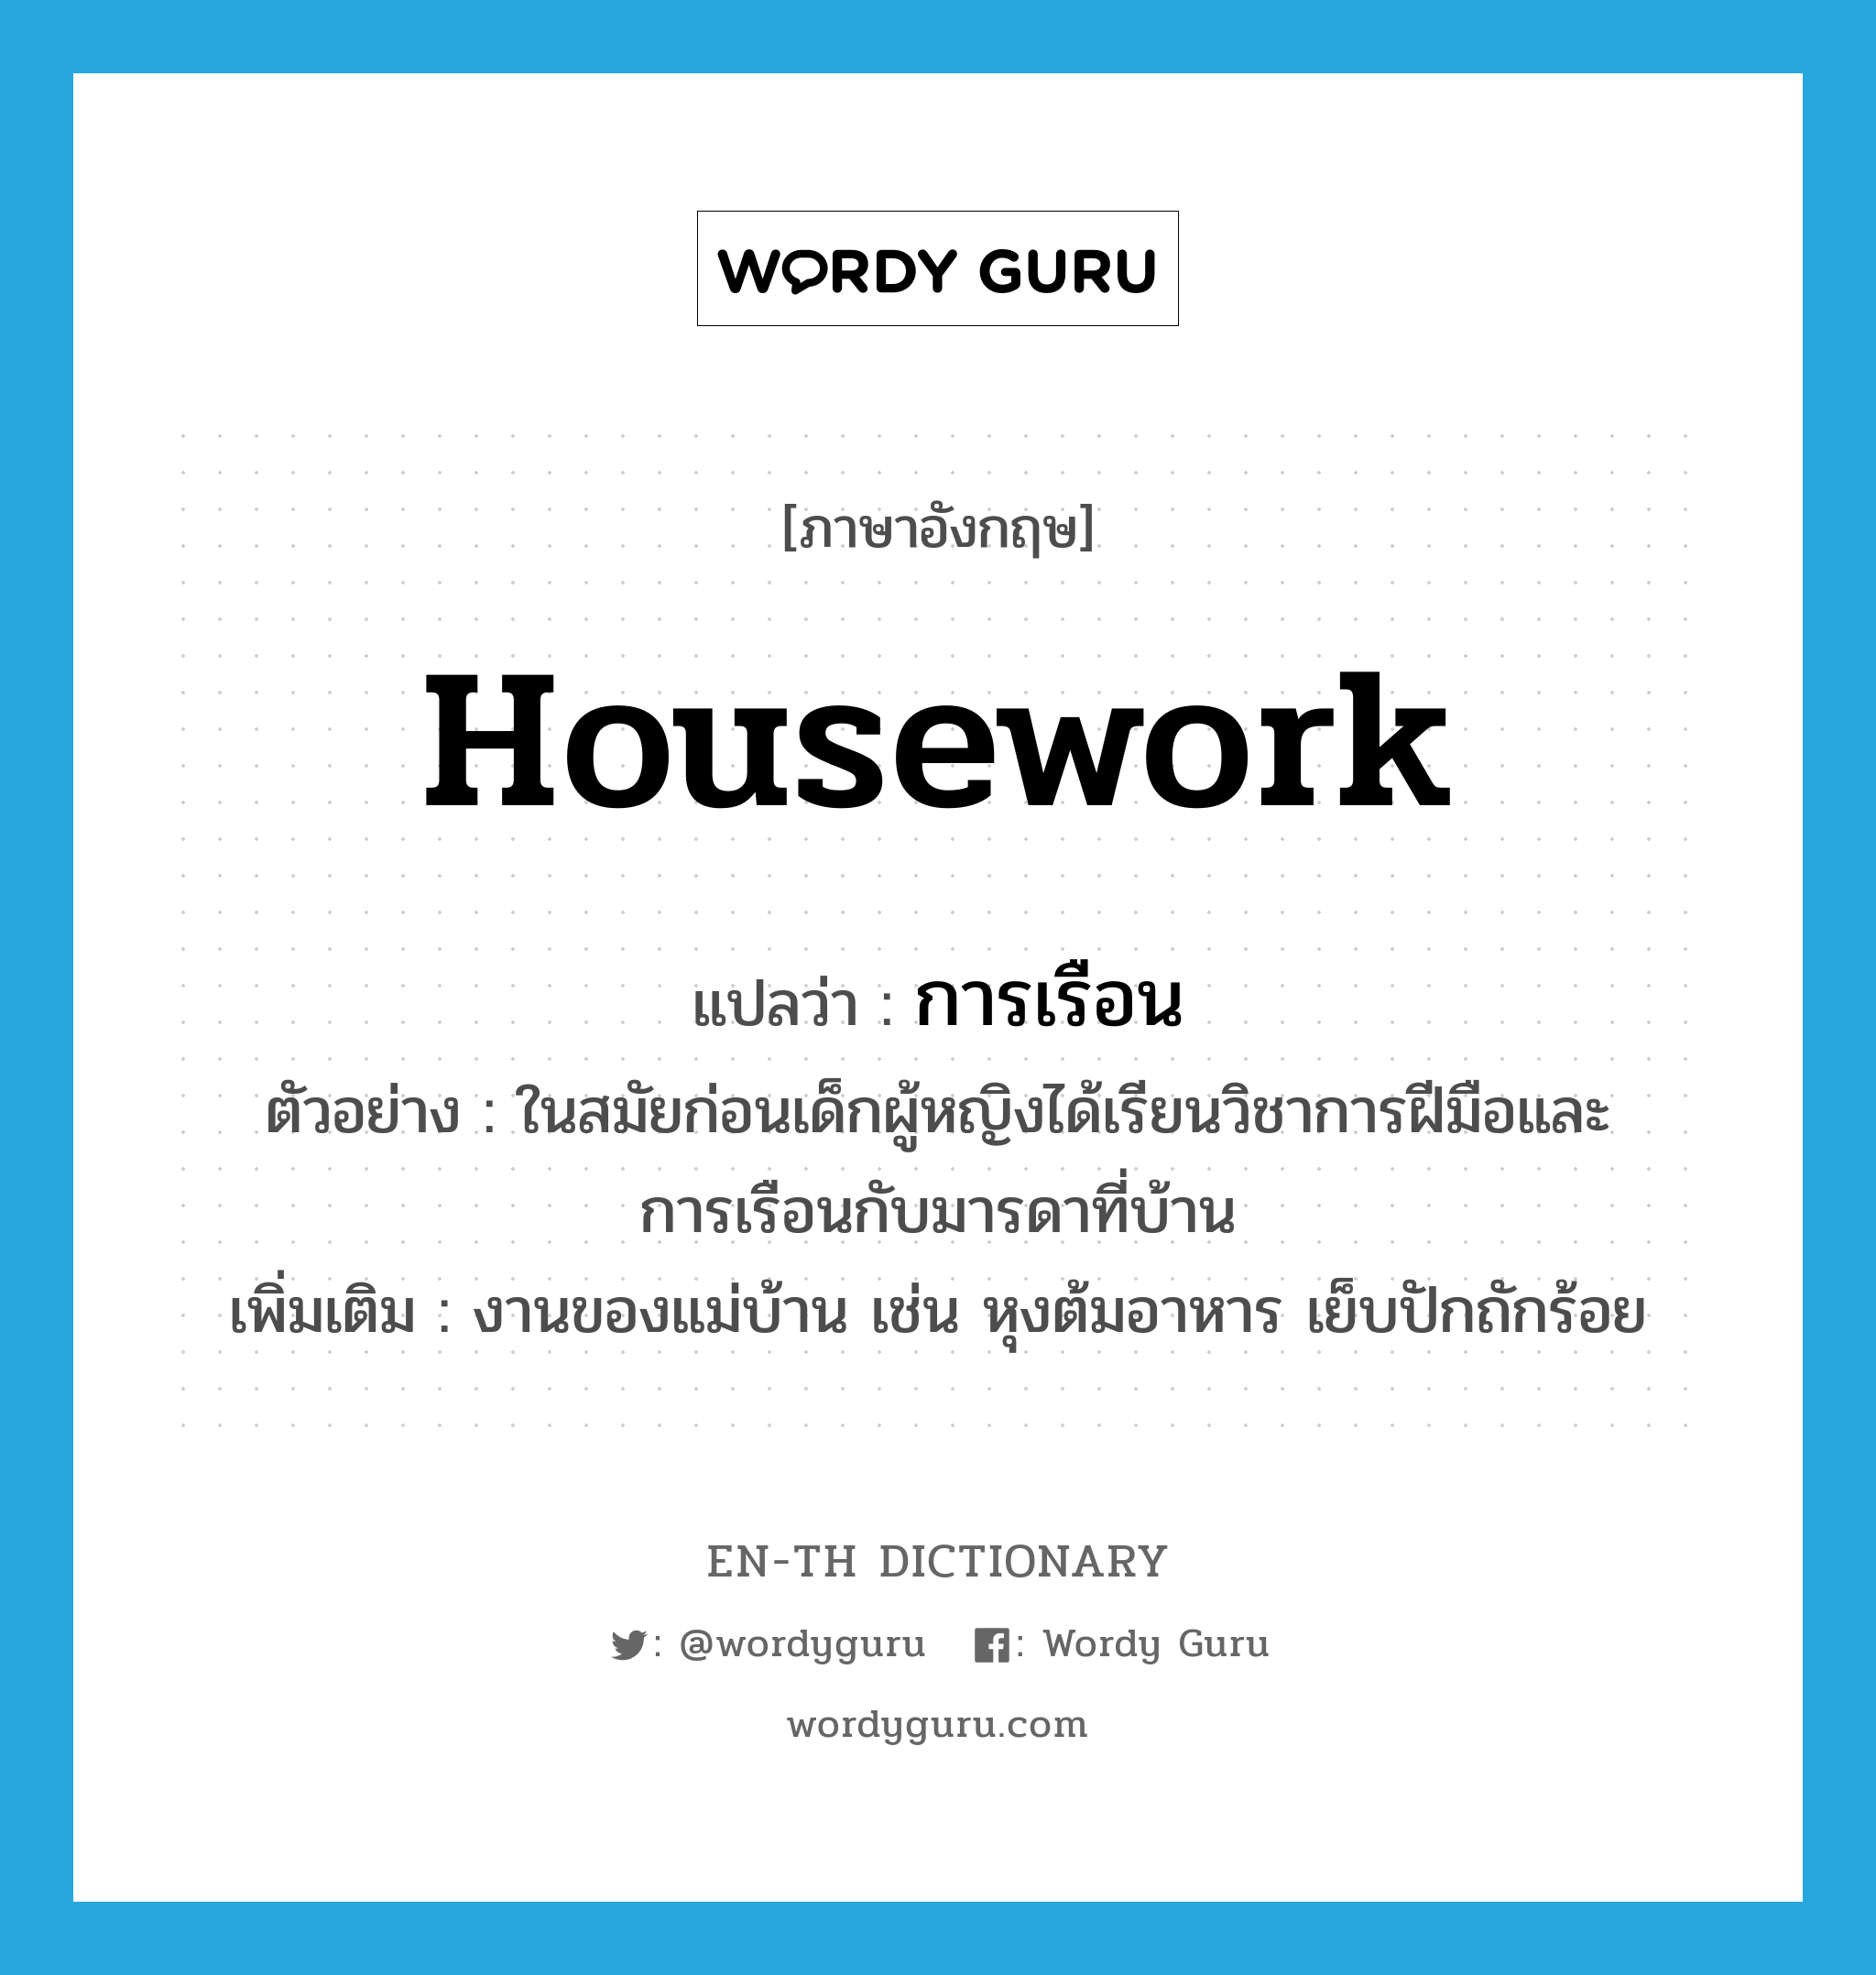 housework แปลว่า?, คำศัพท์ภาษาอังกฤษ housework แปลว่า การเรือน ประเภท N ตัวอย่าง ในสมัยก่อนเด็กผู้หญิงได้เรียนวิชาการฝีมือและการเรือนกับมารดาที่บ้าน เพิ่มเติม งานของแม่บ้าน เช่น หุงต้มอาหาร เย็บปักถักร้อย หมวด N